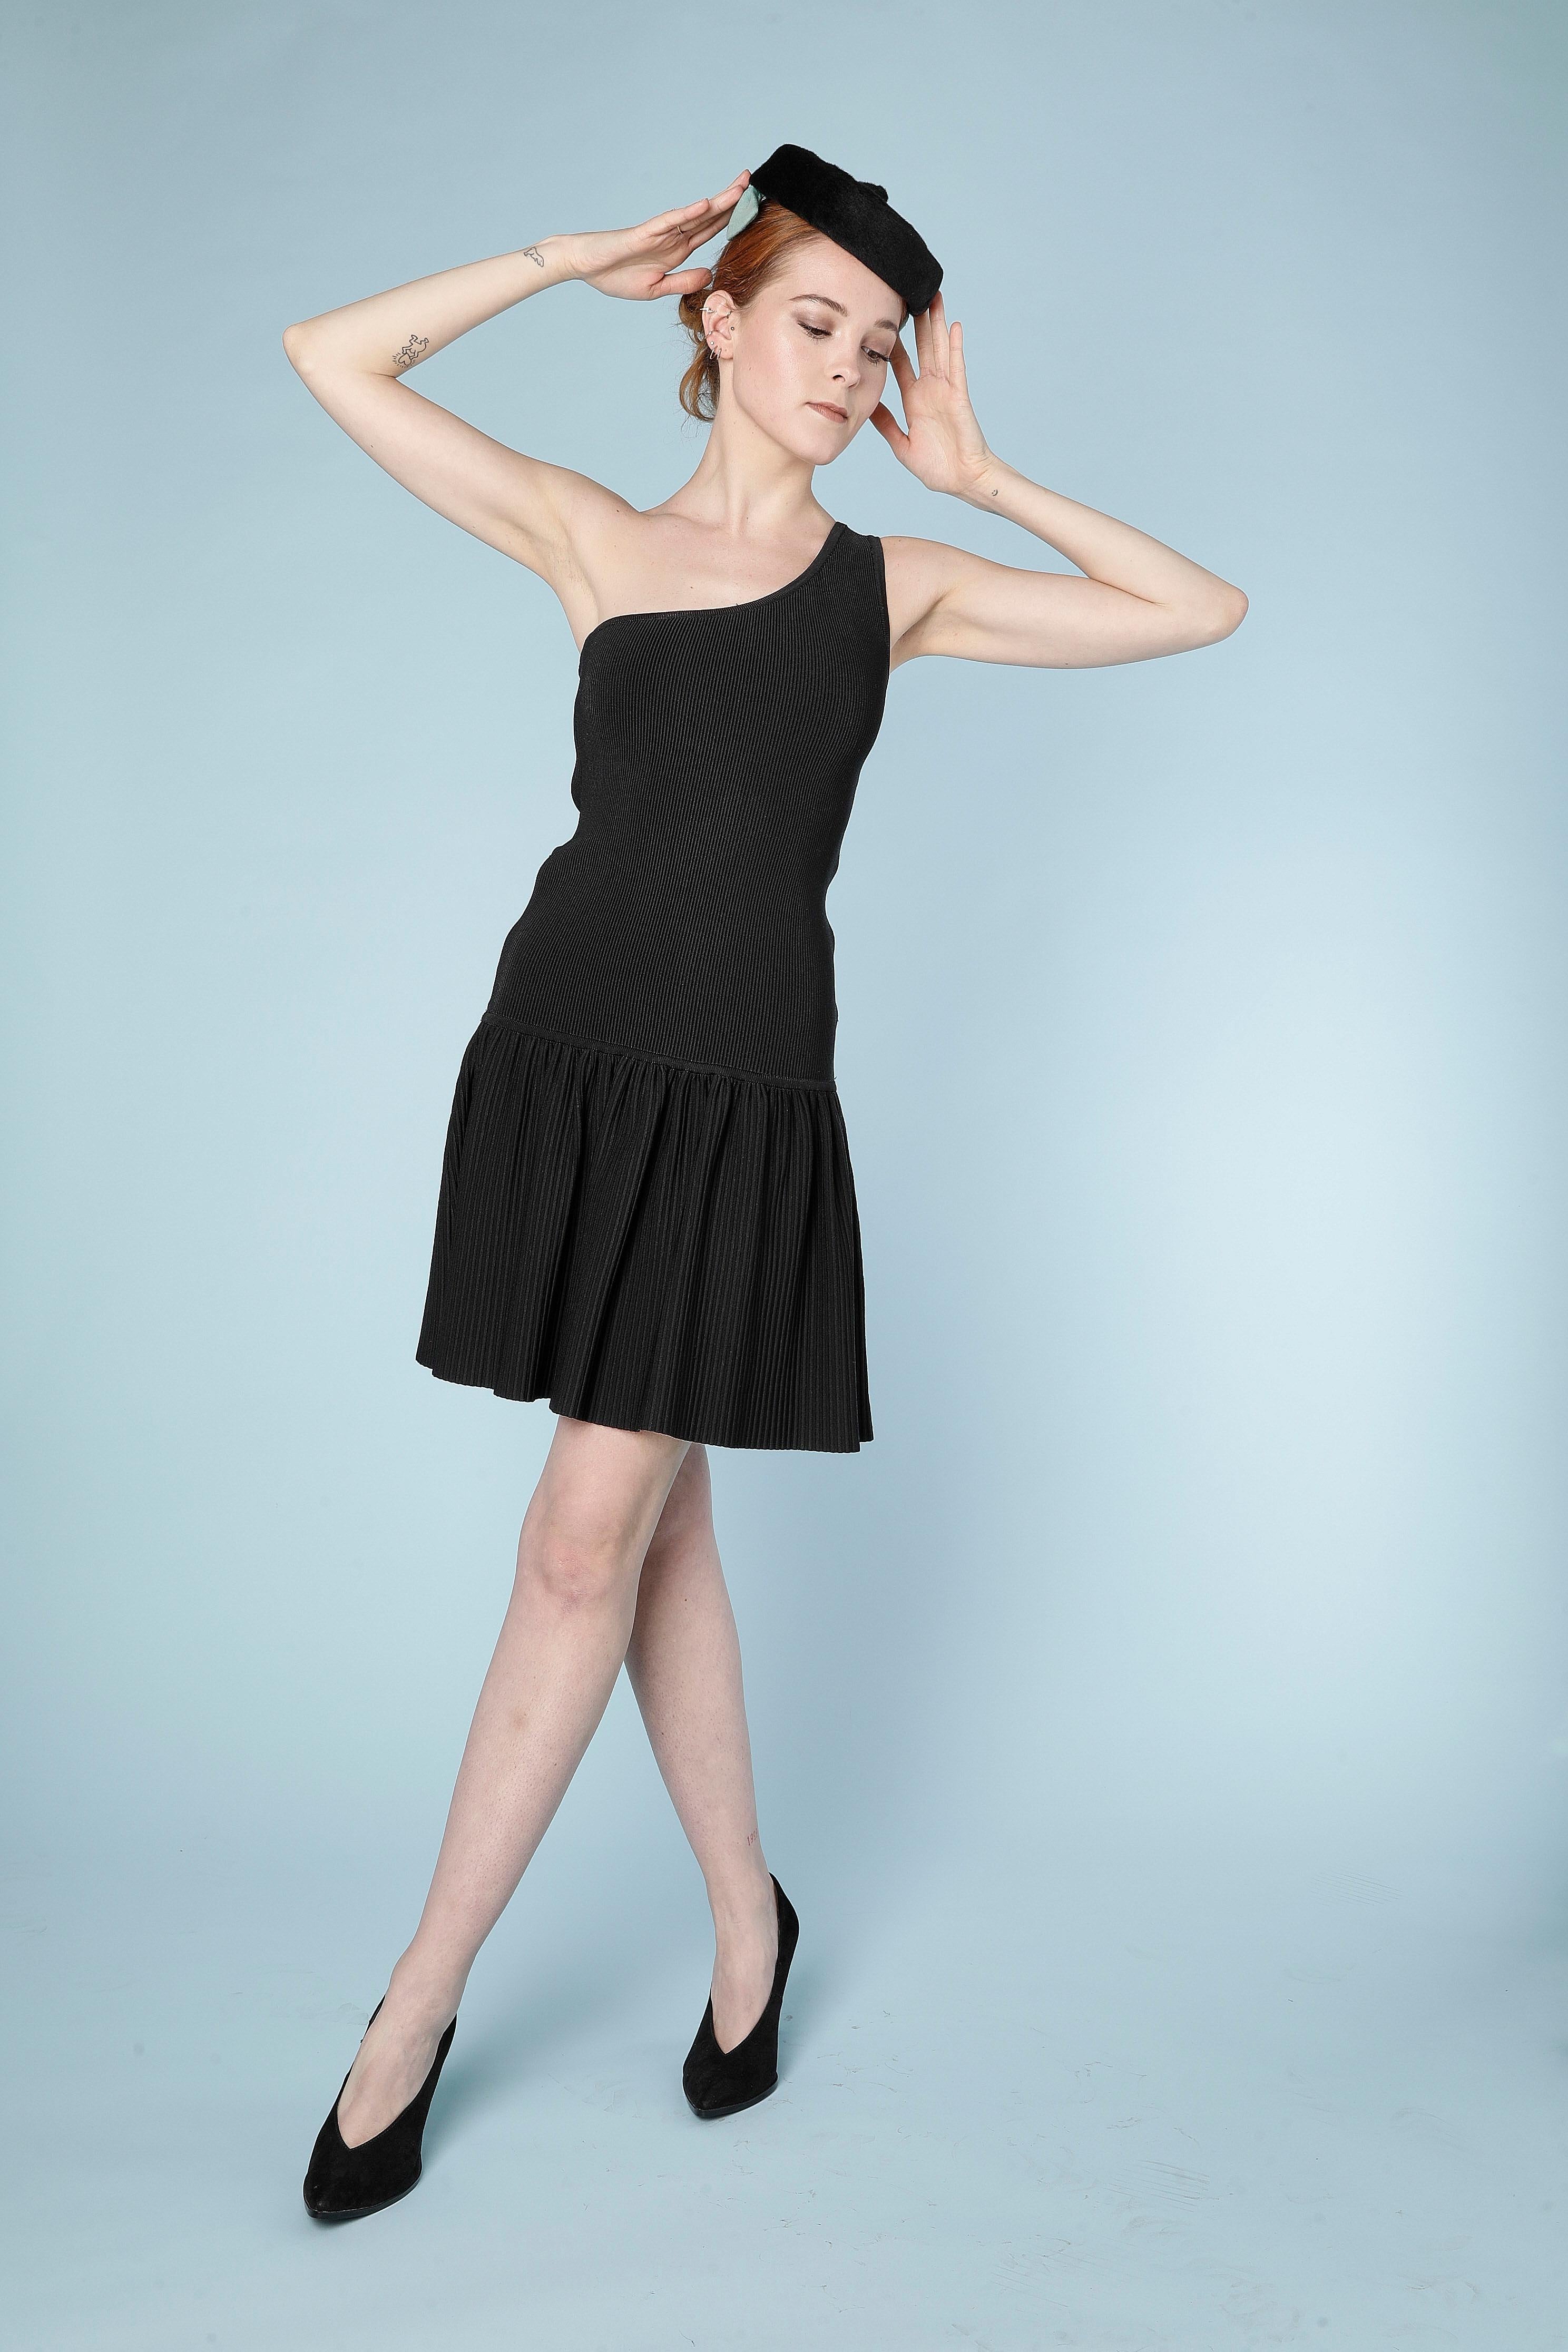 Black asymmetrical dress in rayon knit AlaÏa  2